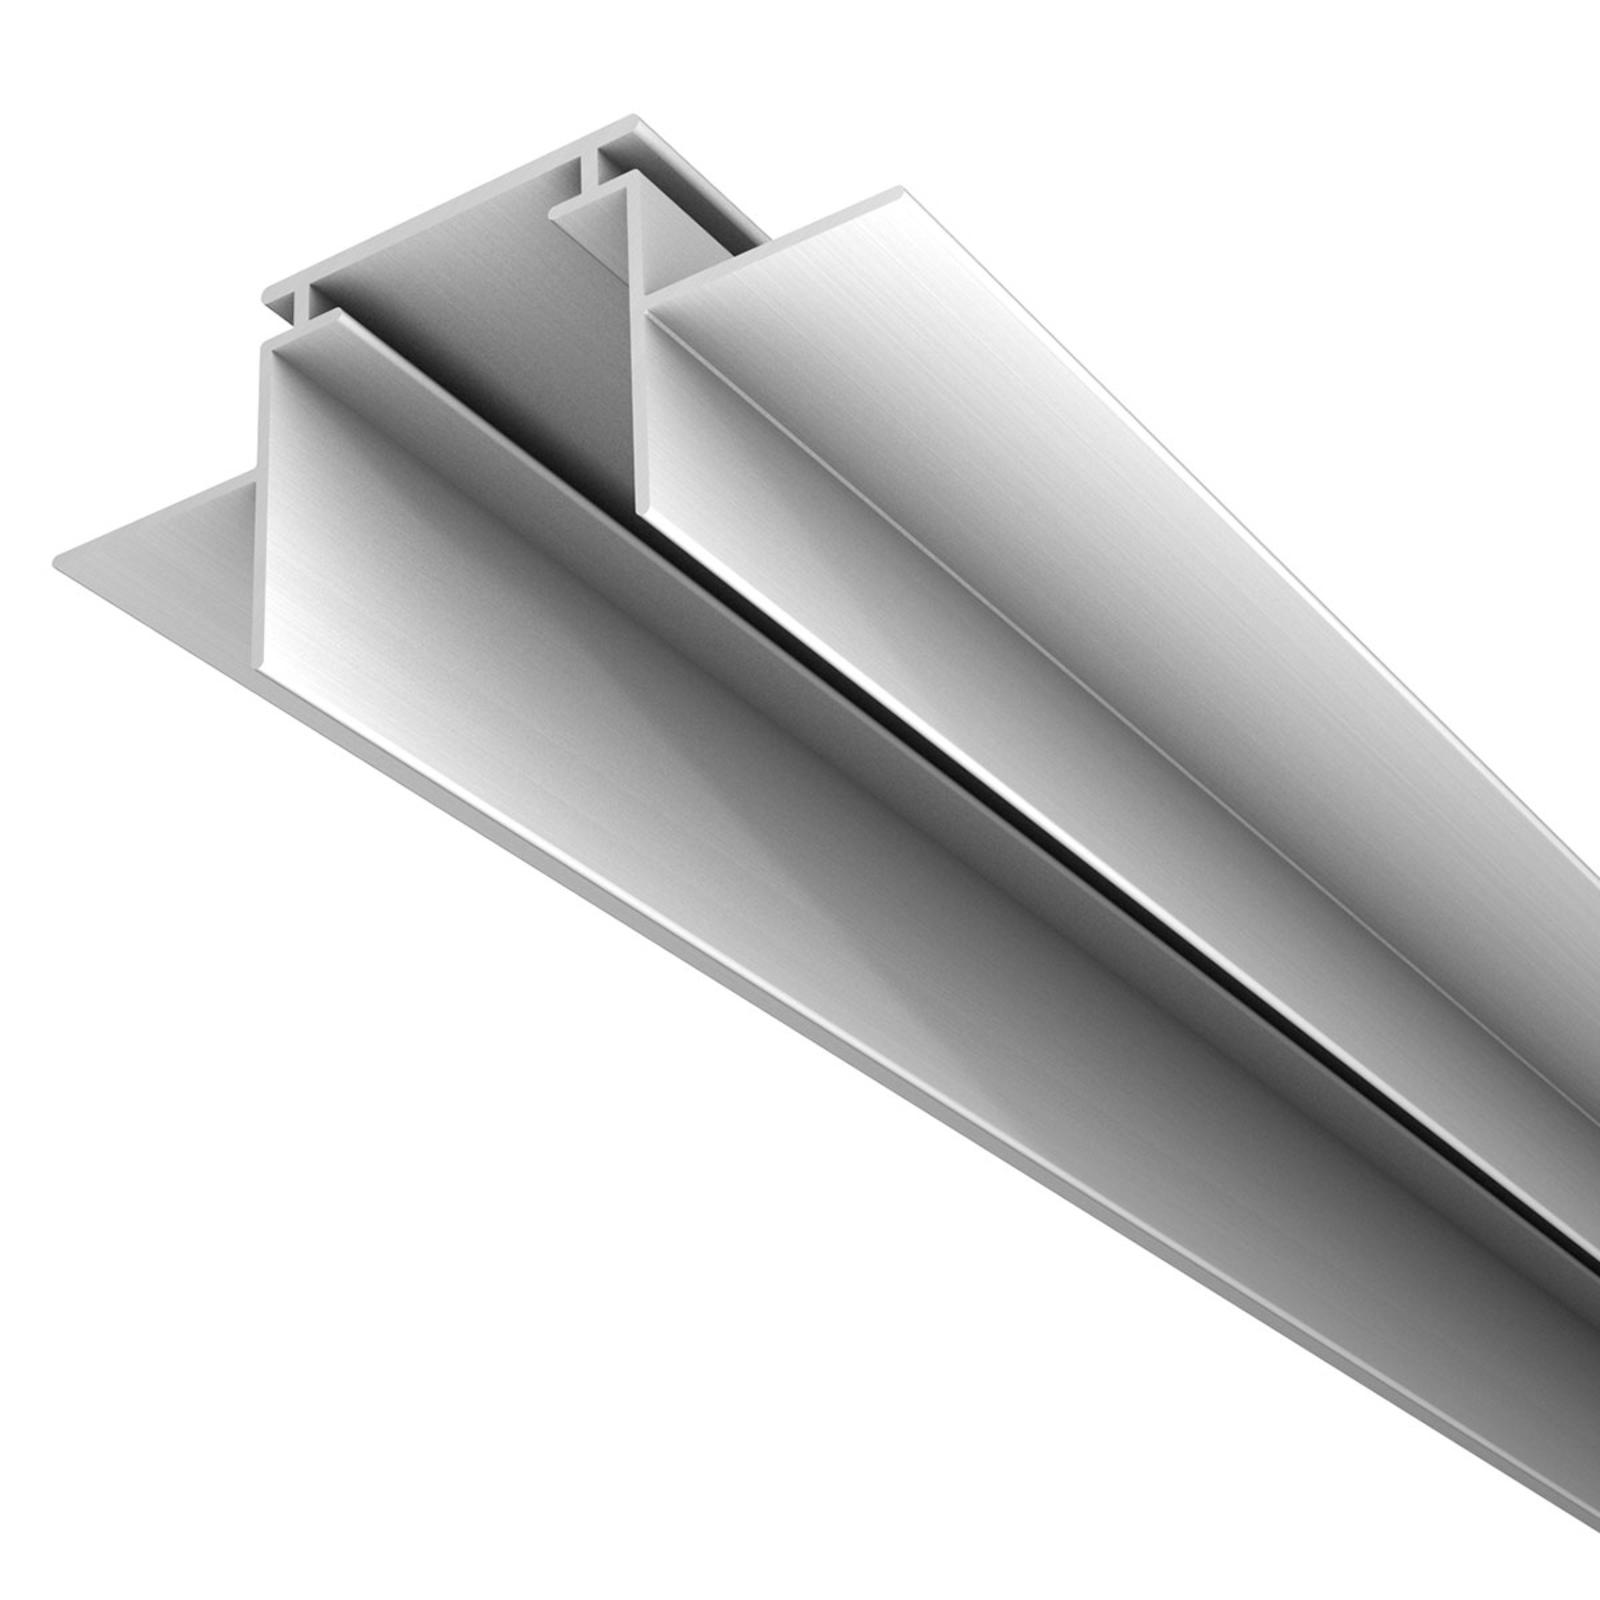 M28 LED alumīnija profils 66 mm plats atbalsta profils